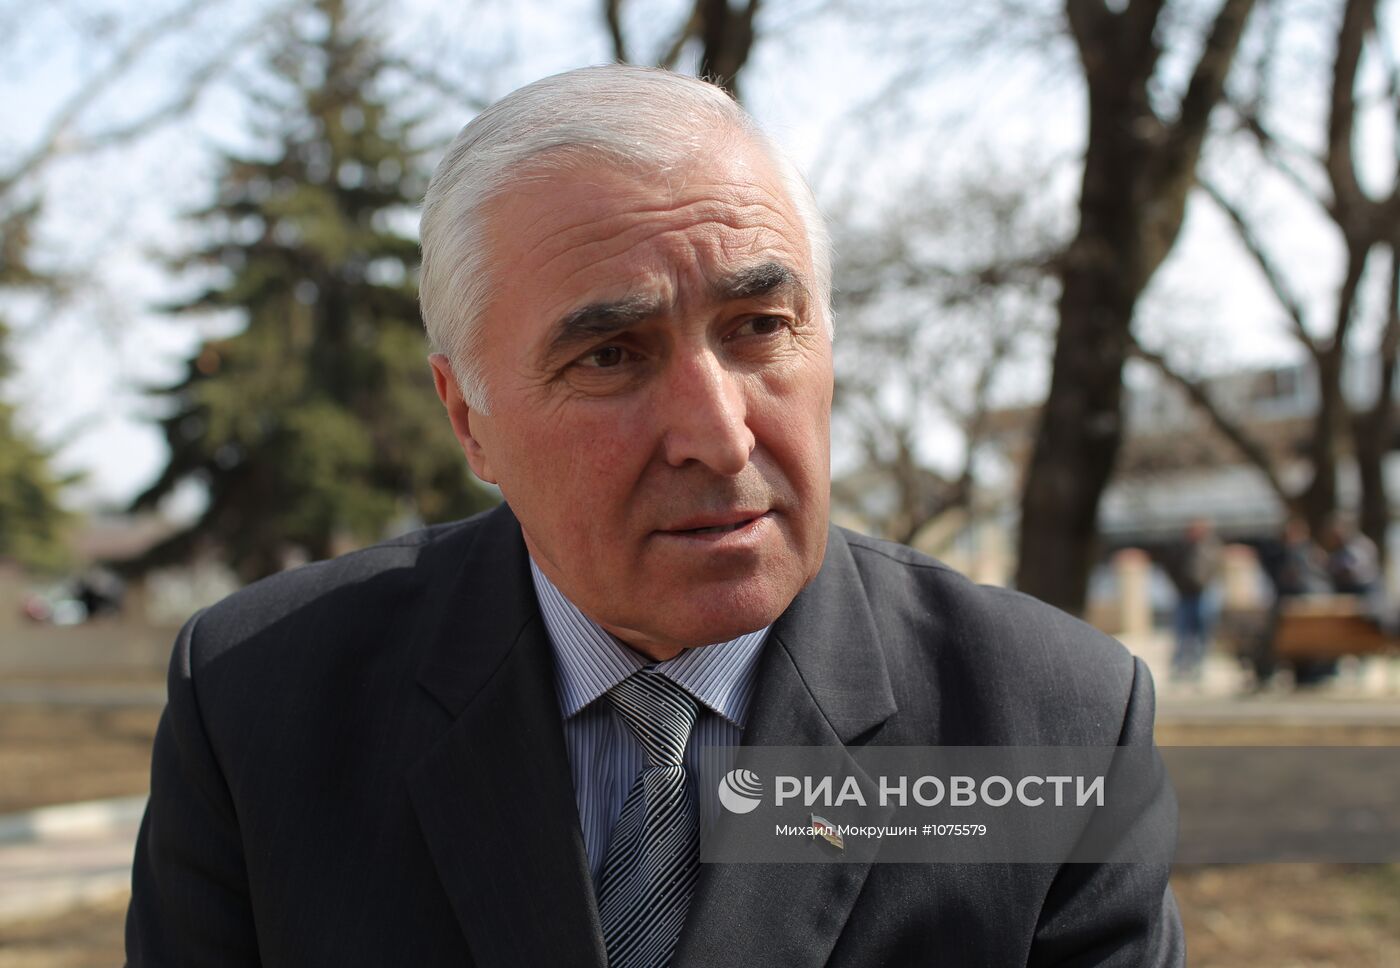 П/к кандидатов в президенты Южной Осетии